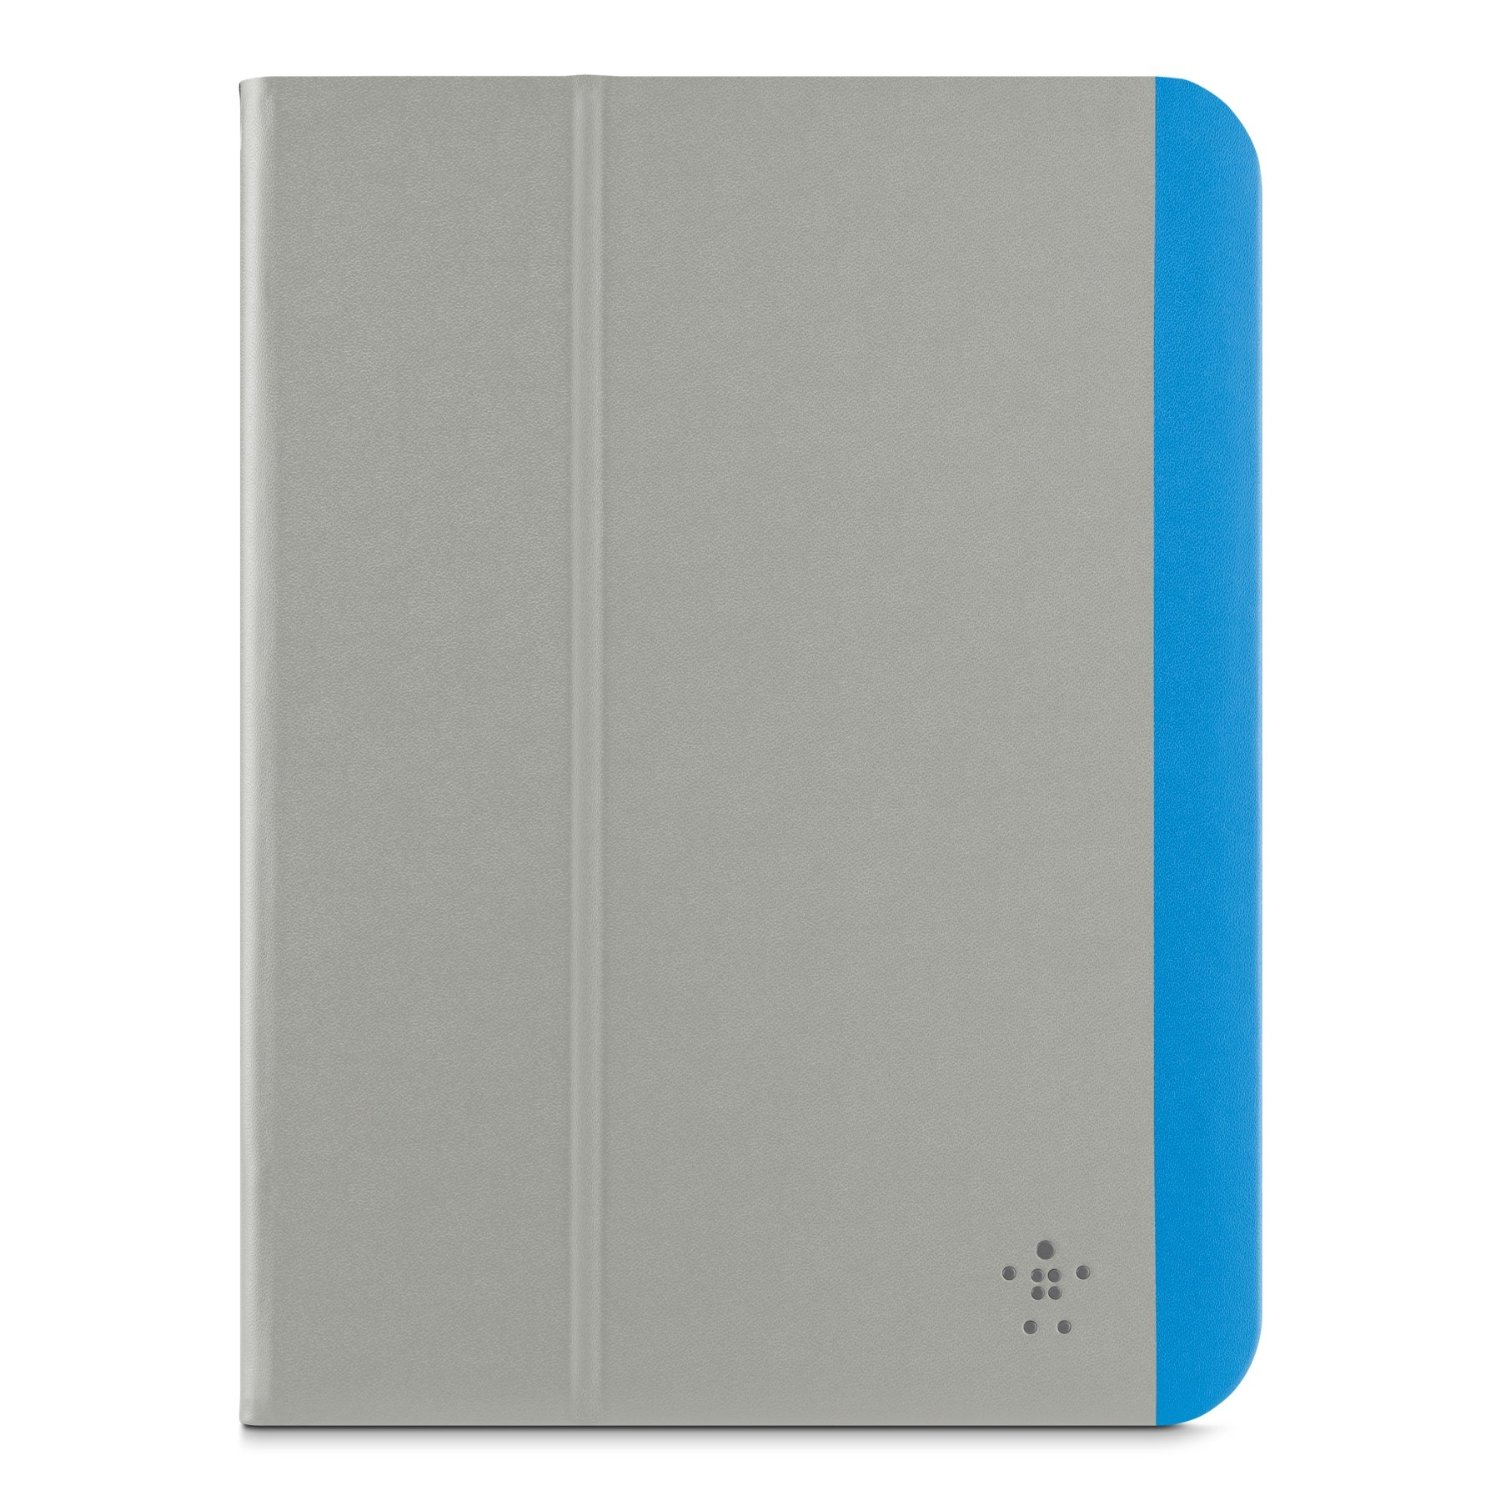 Funda para iPad Air 2 and iPad Air marca Belkin color gris y azul